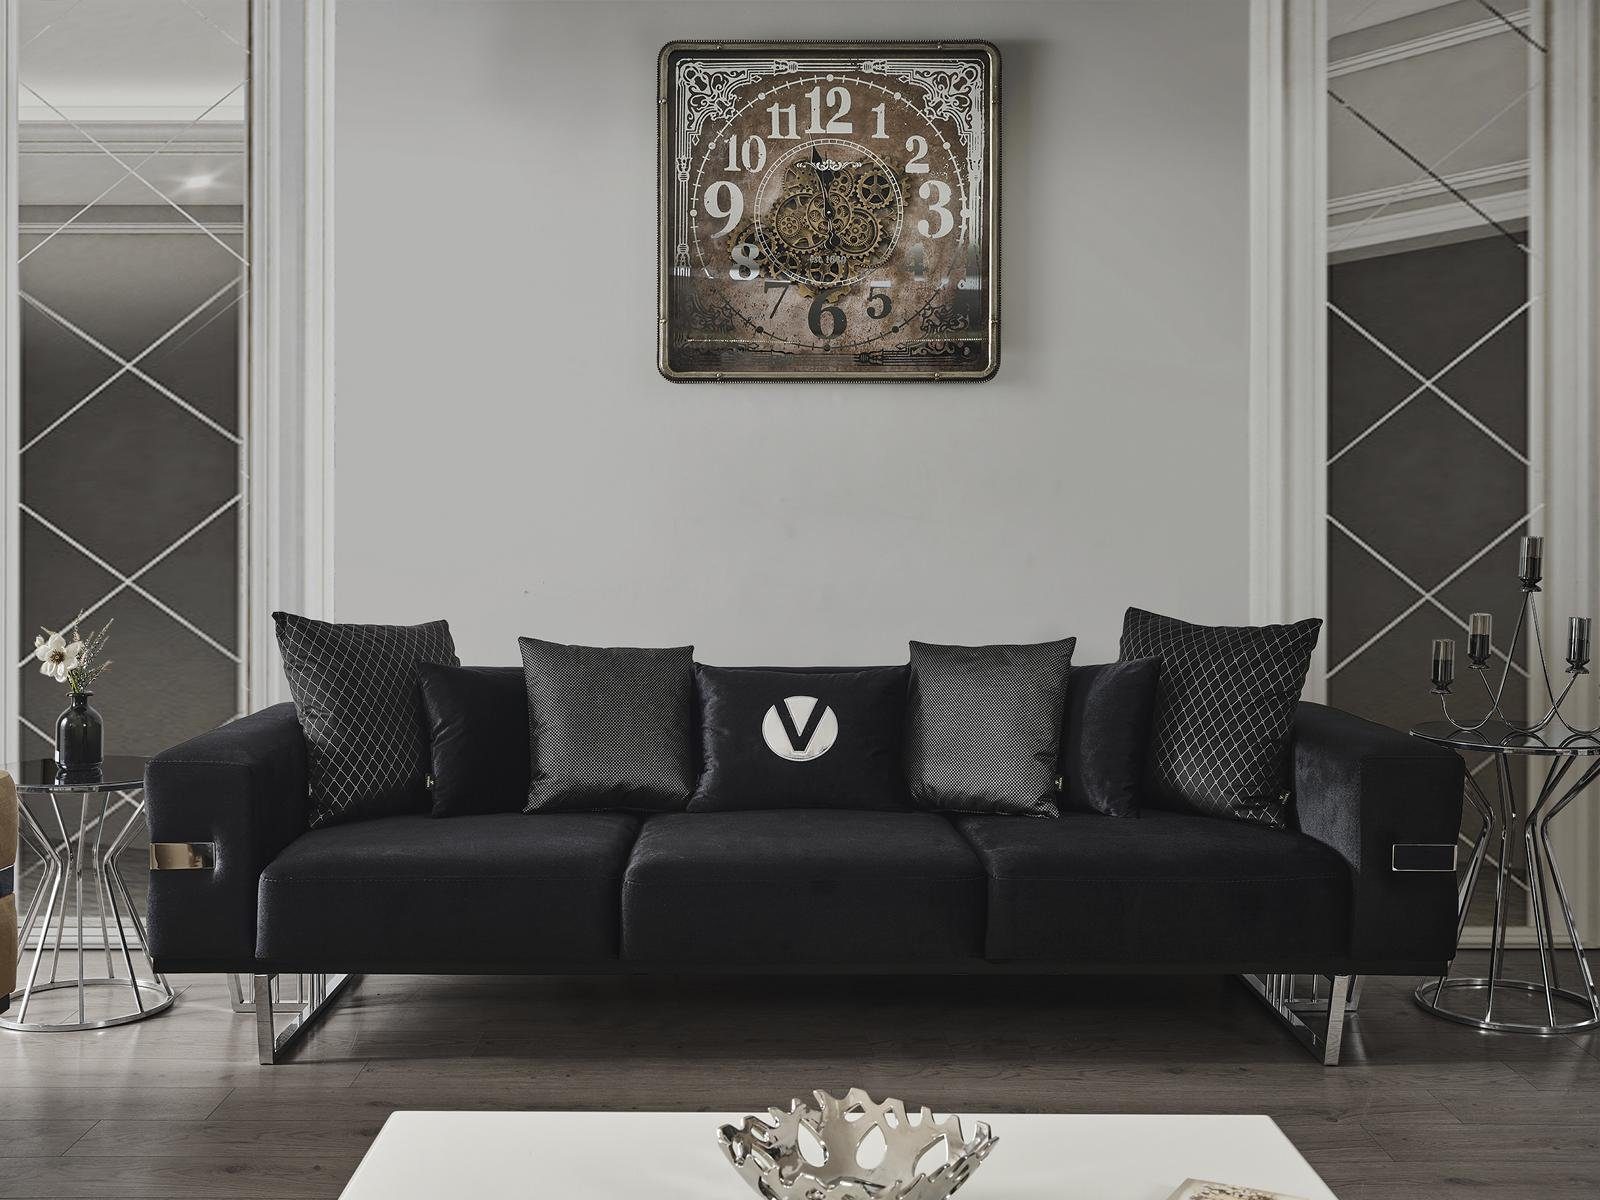 JVmoebel Sofa Wohnzimmer Couch Couchen Polster Sofas xxl Design Sofa 4 Sitzer, Made in Europa